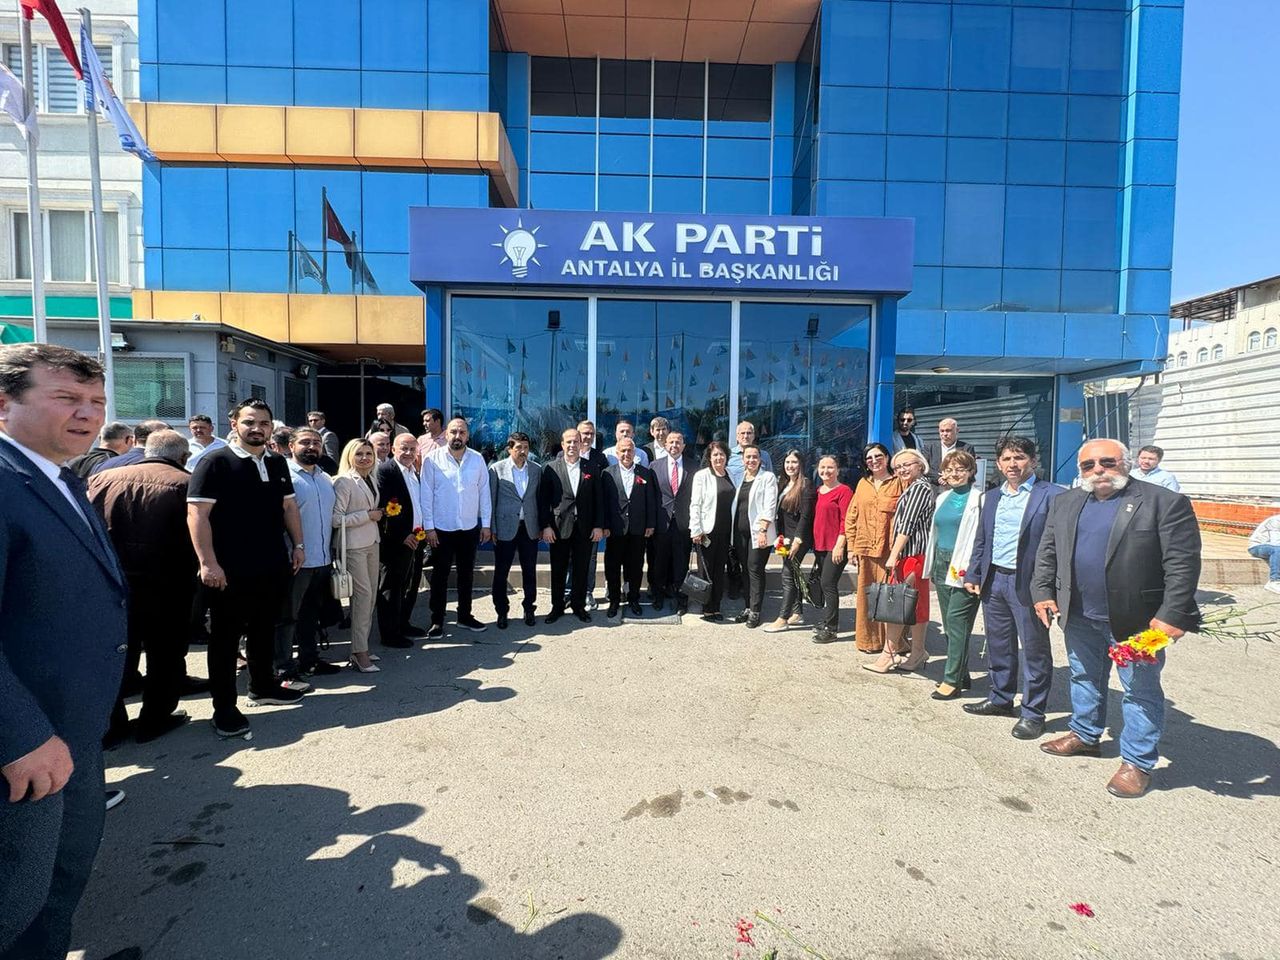 AK Parti, Antalya'da Bayramlaşma Etkinliği Düzenledi